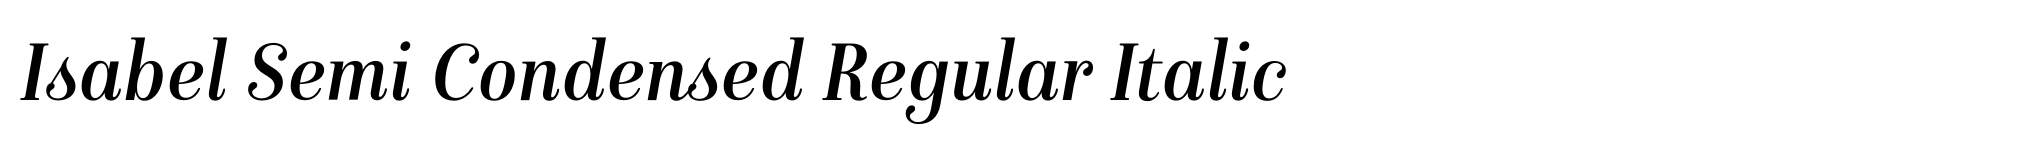 Isabel Semi Condensed Regular Italic image